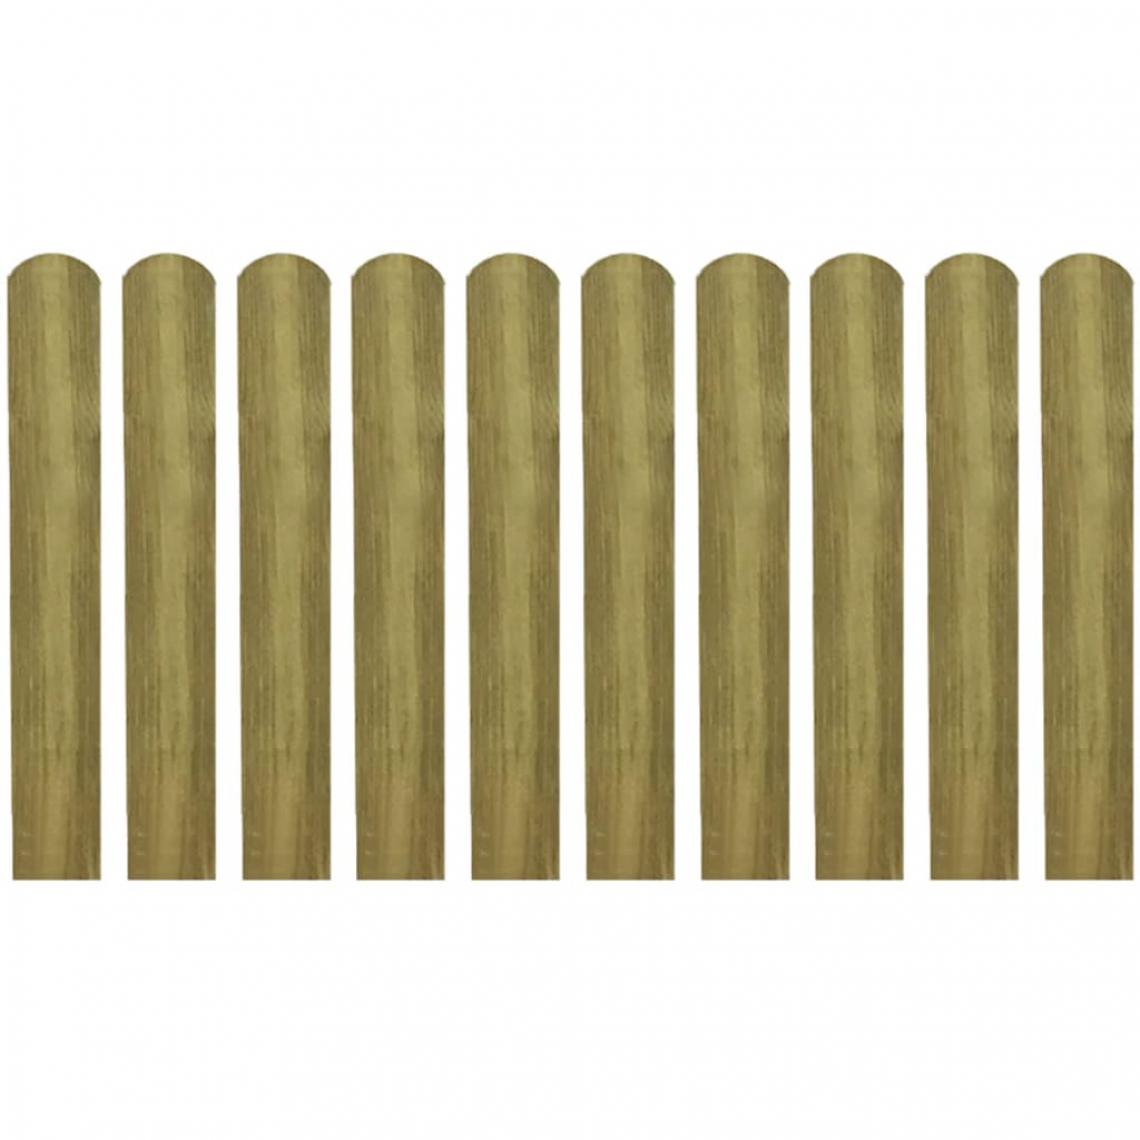 Vidaxl - vidaXL 20 pcs Lattes imprégnées de clôture Bois 60 cm - Clôture en bois